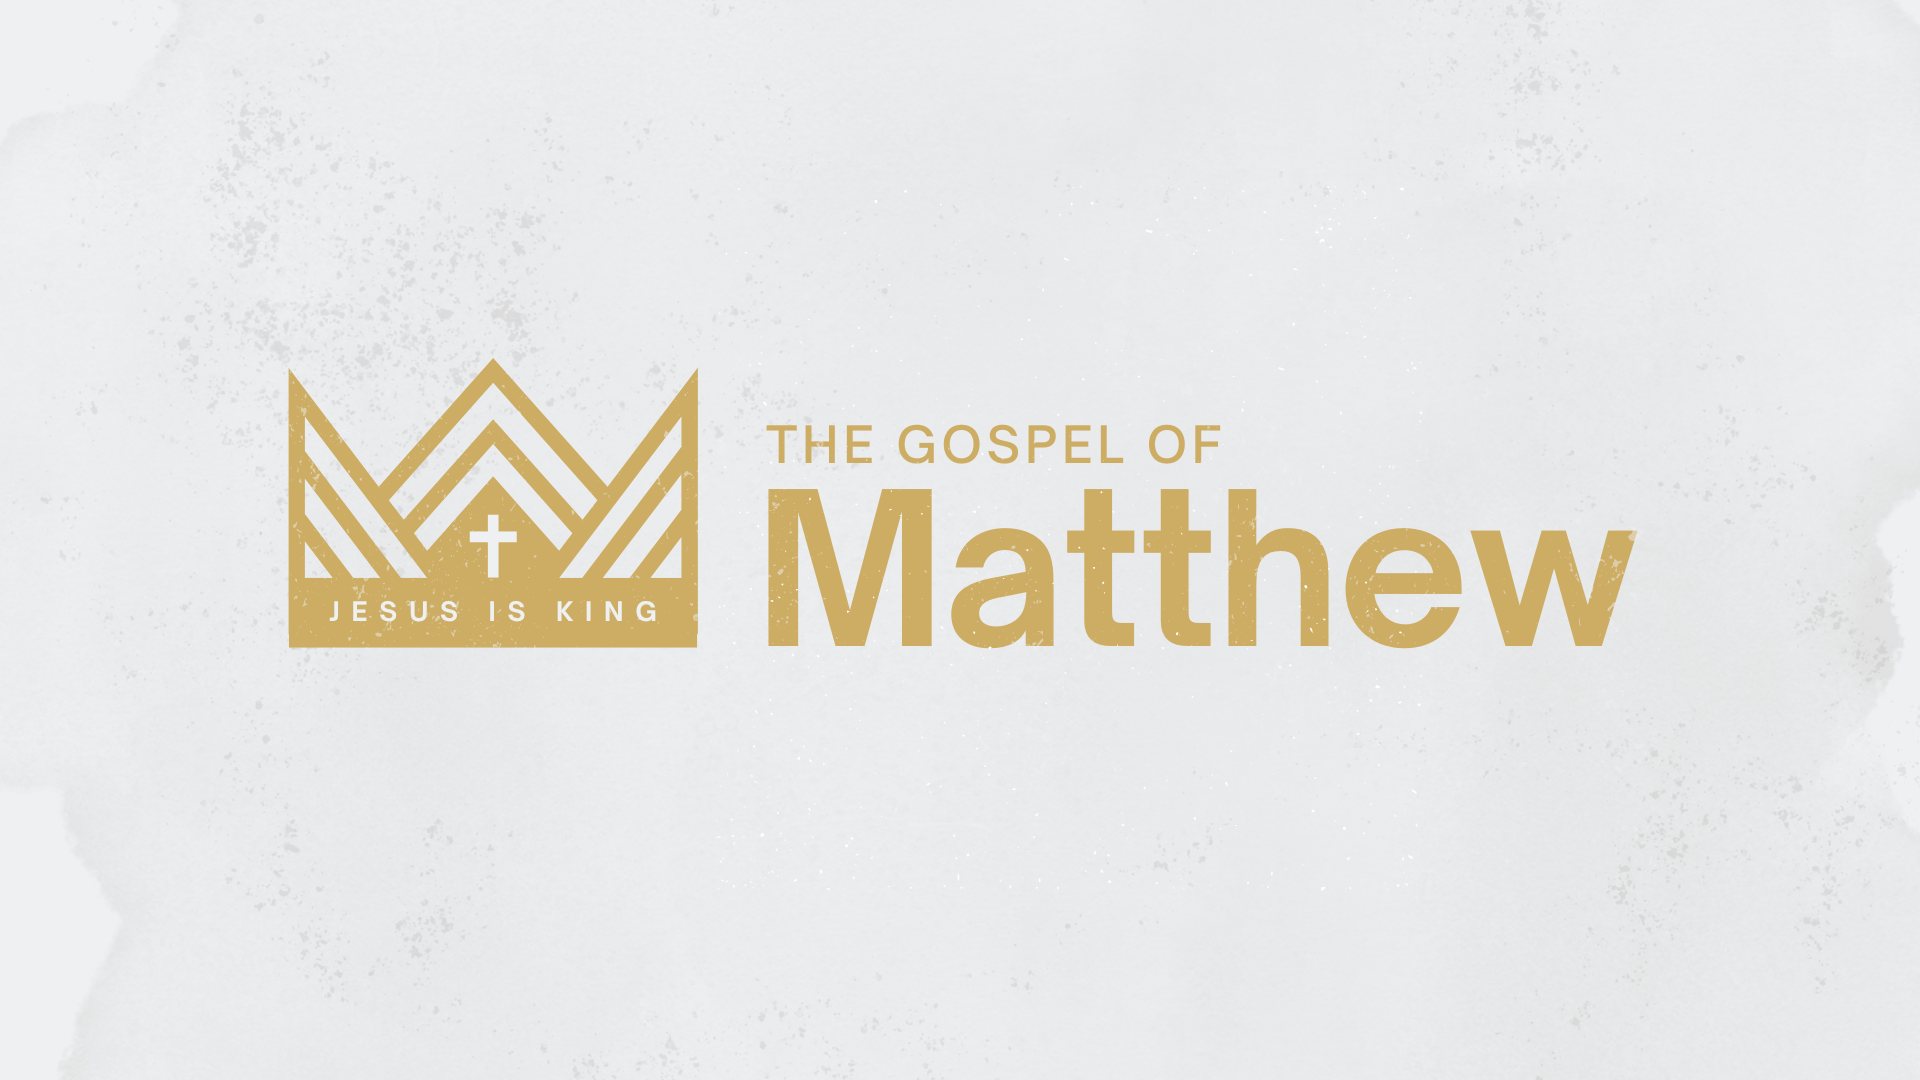 The Gospel of Matthew, part 2